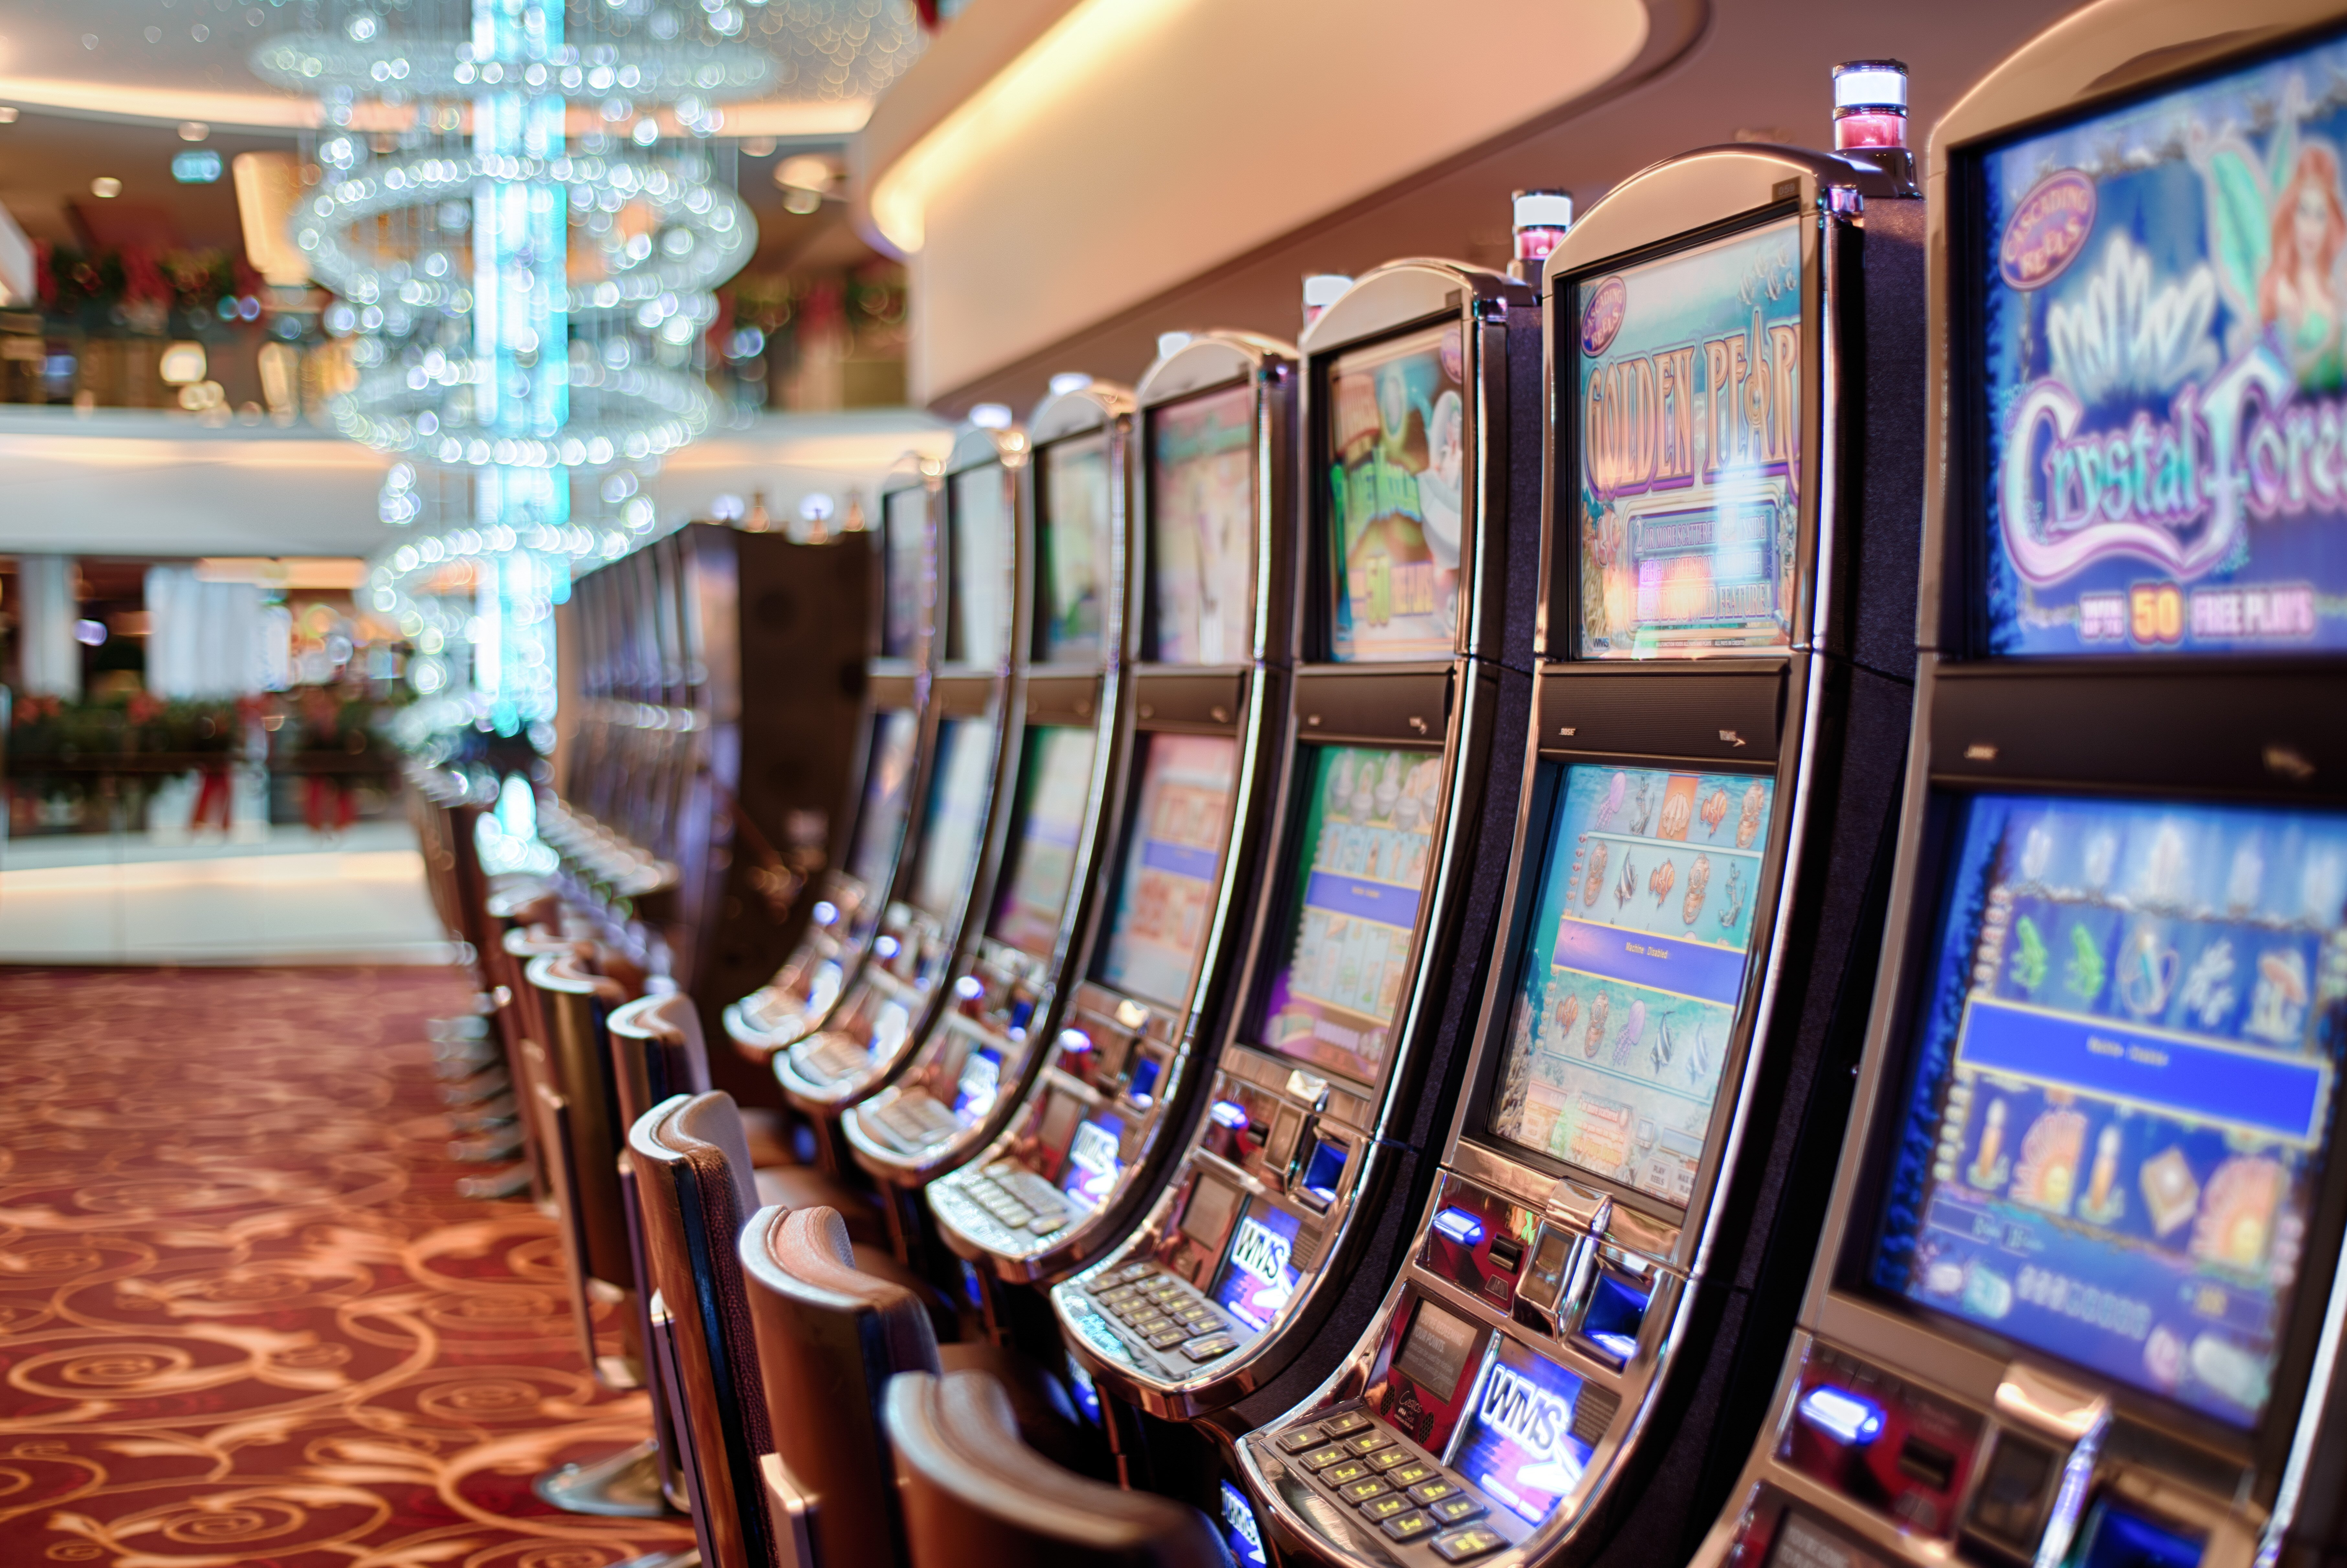 Addiction bet betting casino gambling machines gaming machines luck playing slot machines Wallpaper photo